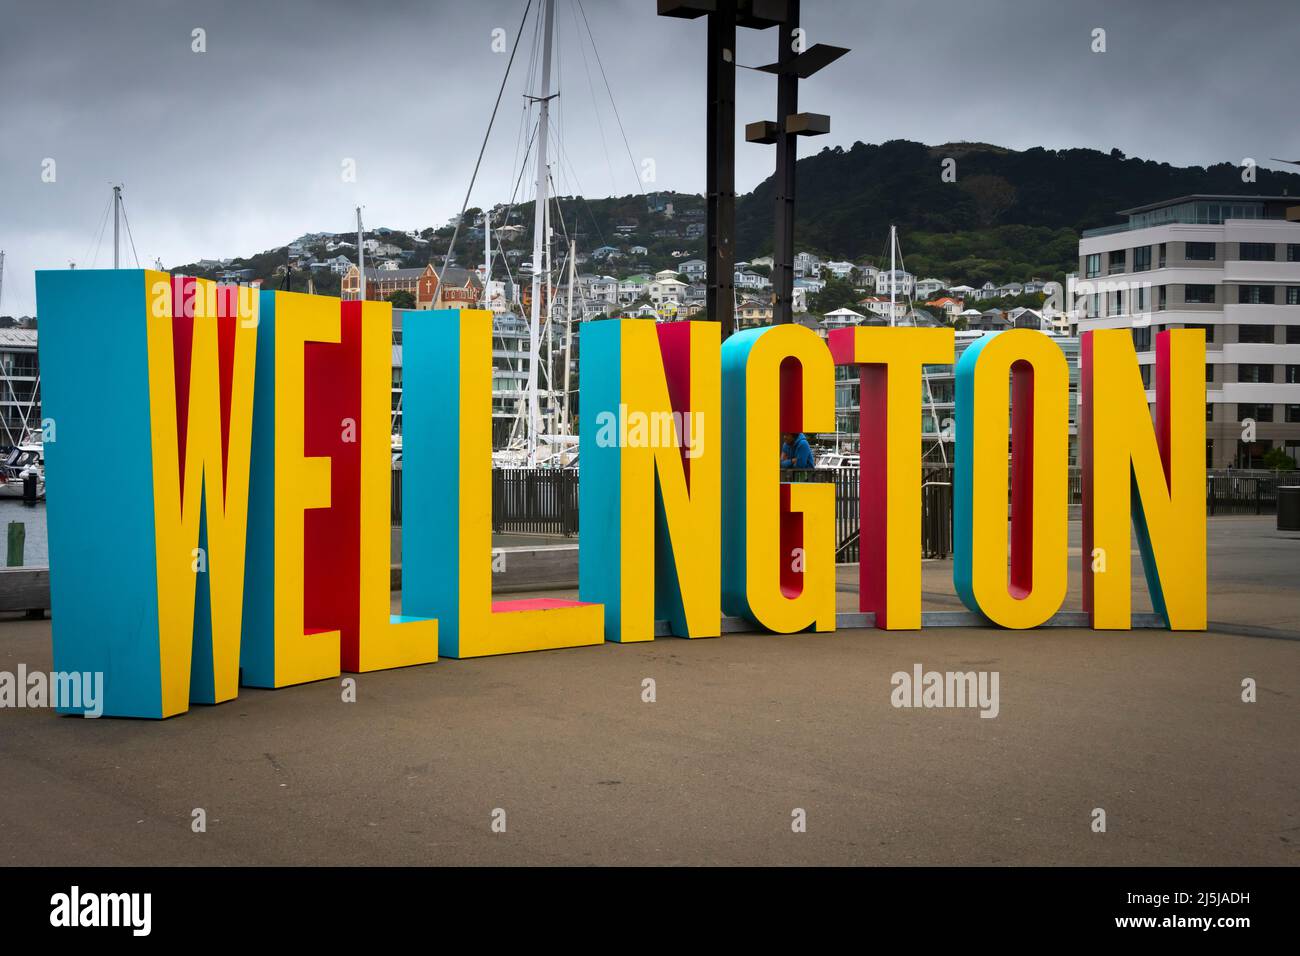 Wellington-Schild, Taranaki Wharf, Wellington, Nordinsel, Neuseeland. Der fehlende Buchstabe „I“ ist ein Platz für eine Person zum Stehen. Stockfoto